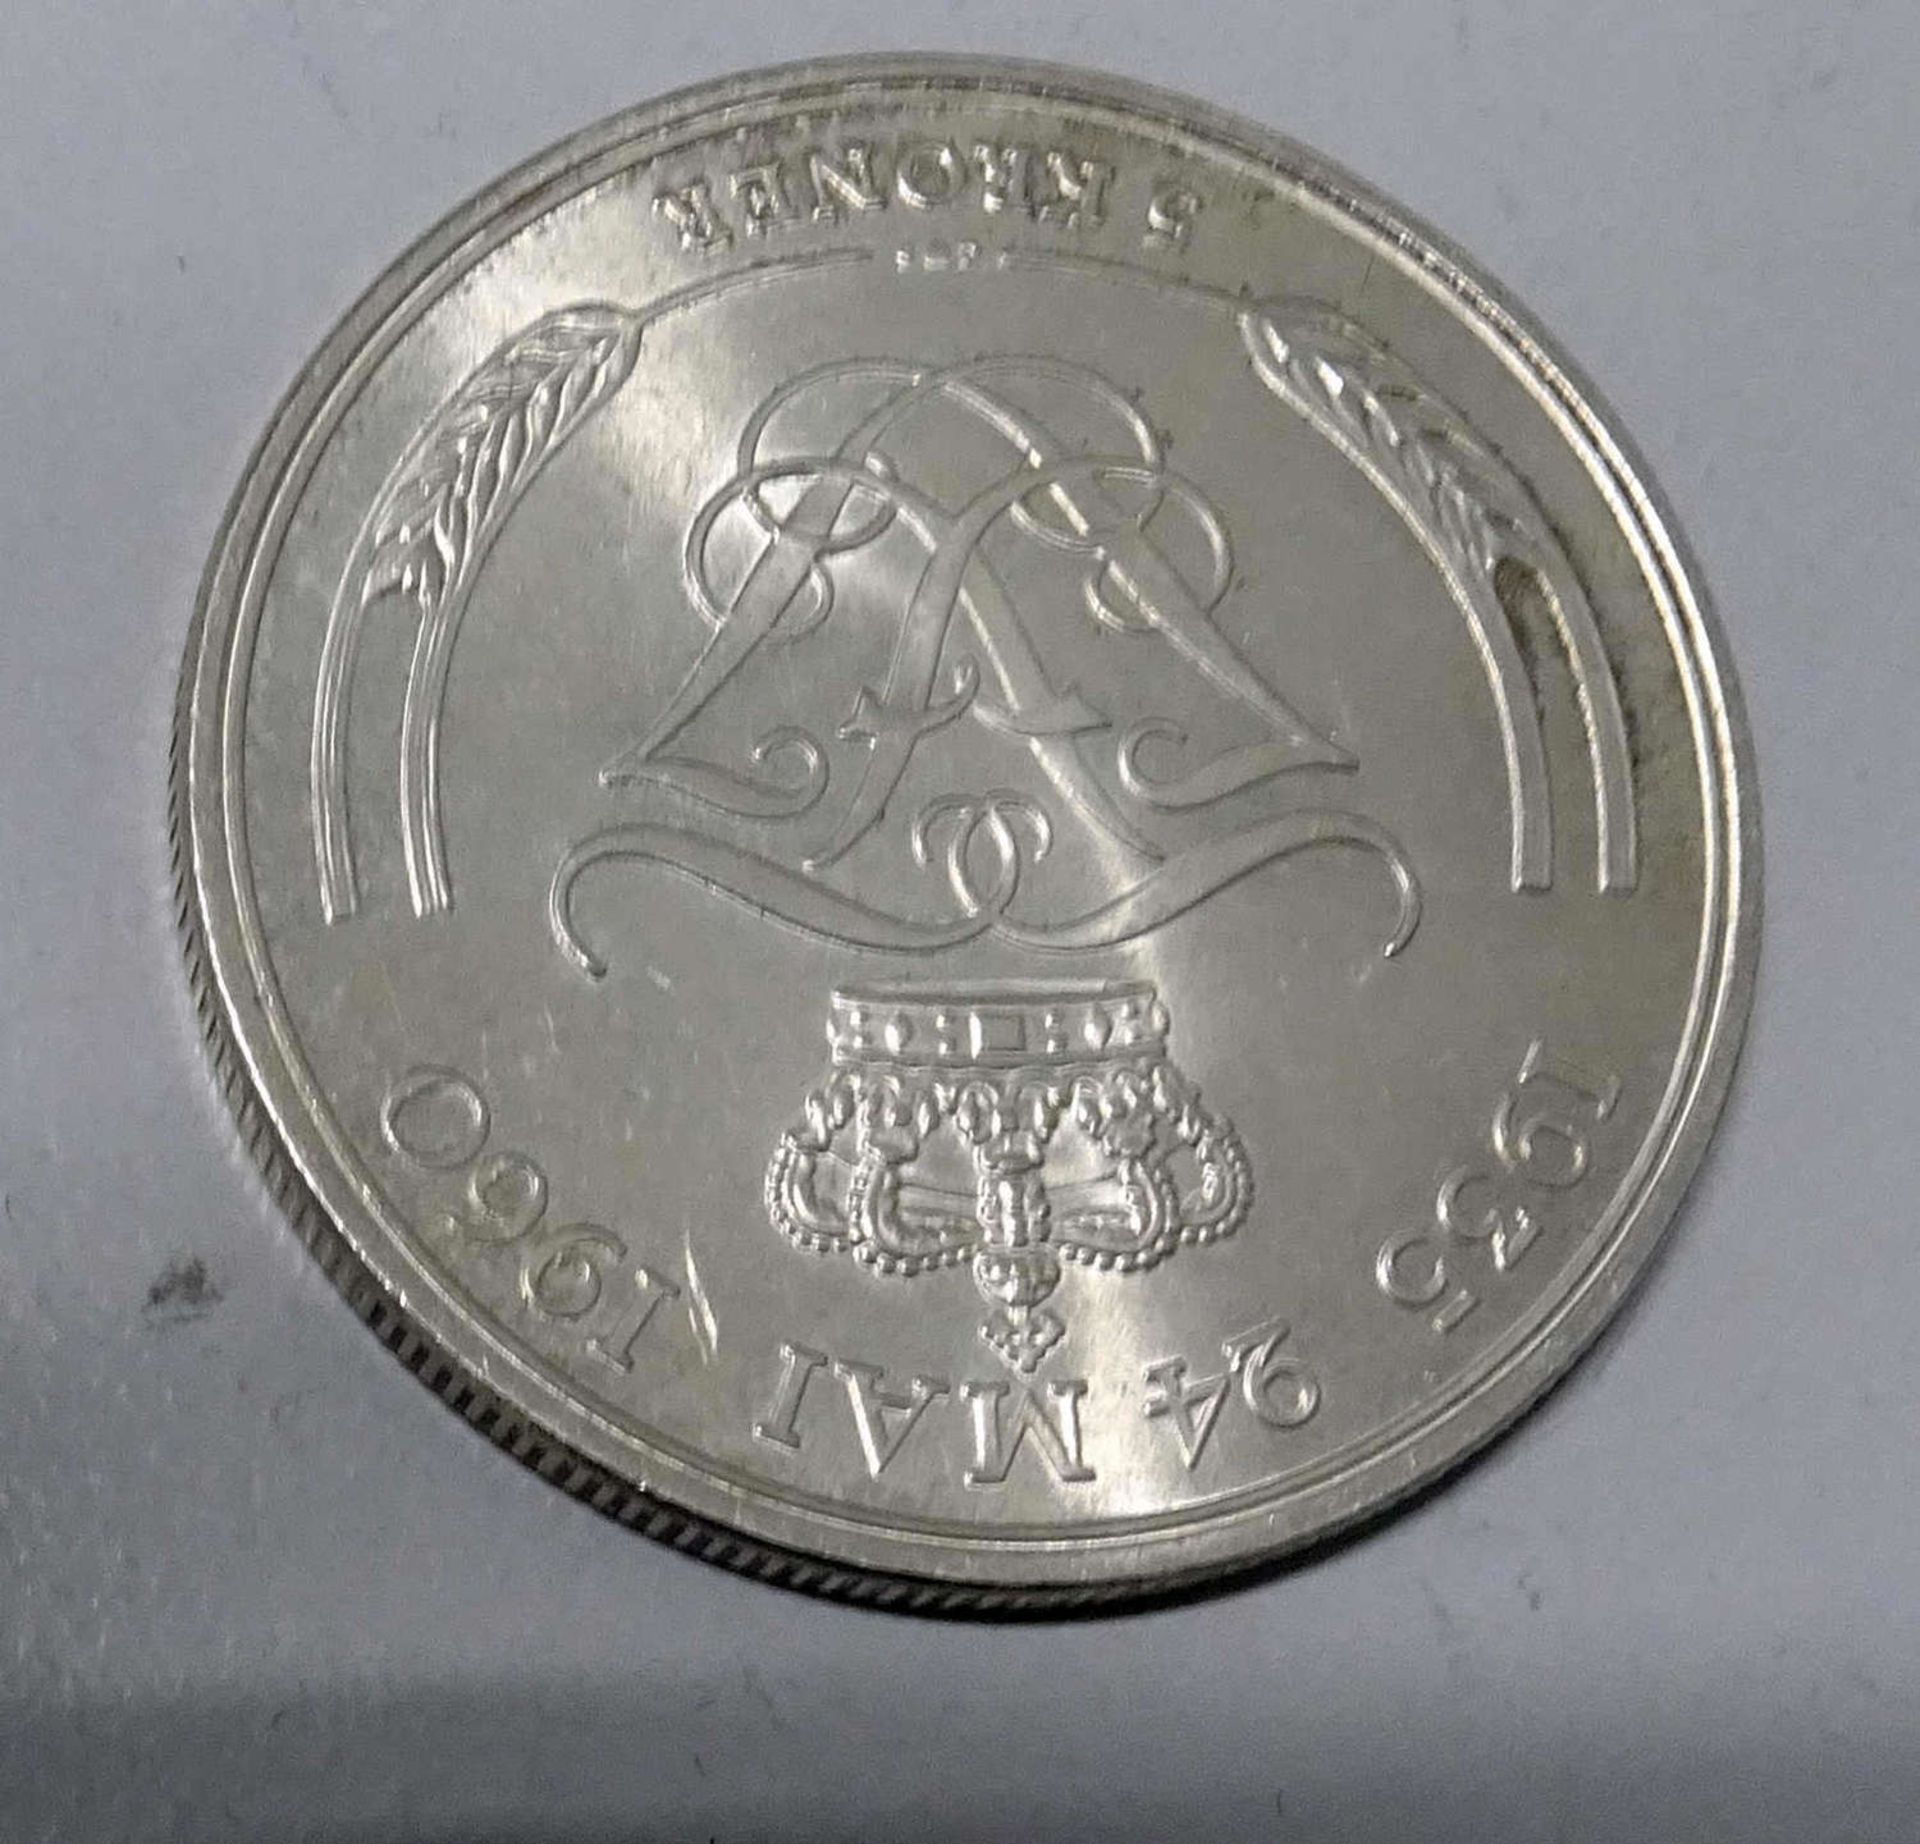 Dänemark Silbermünze. 5 Kroner 1960. KM 852 "Frederik iX"Denmark silver coin. 5 Kroner 1960. KM